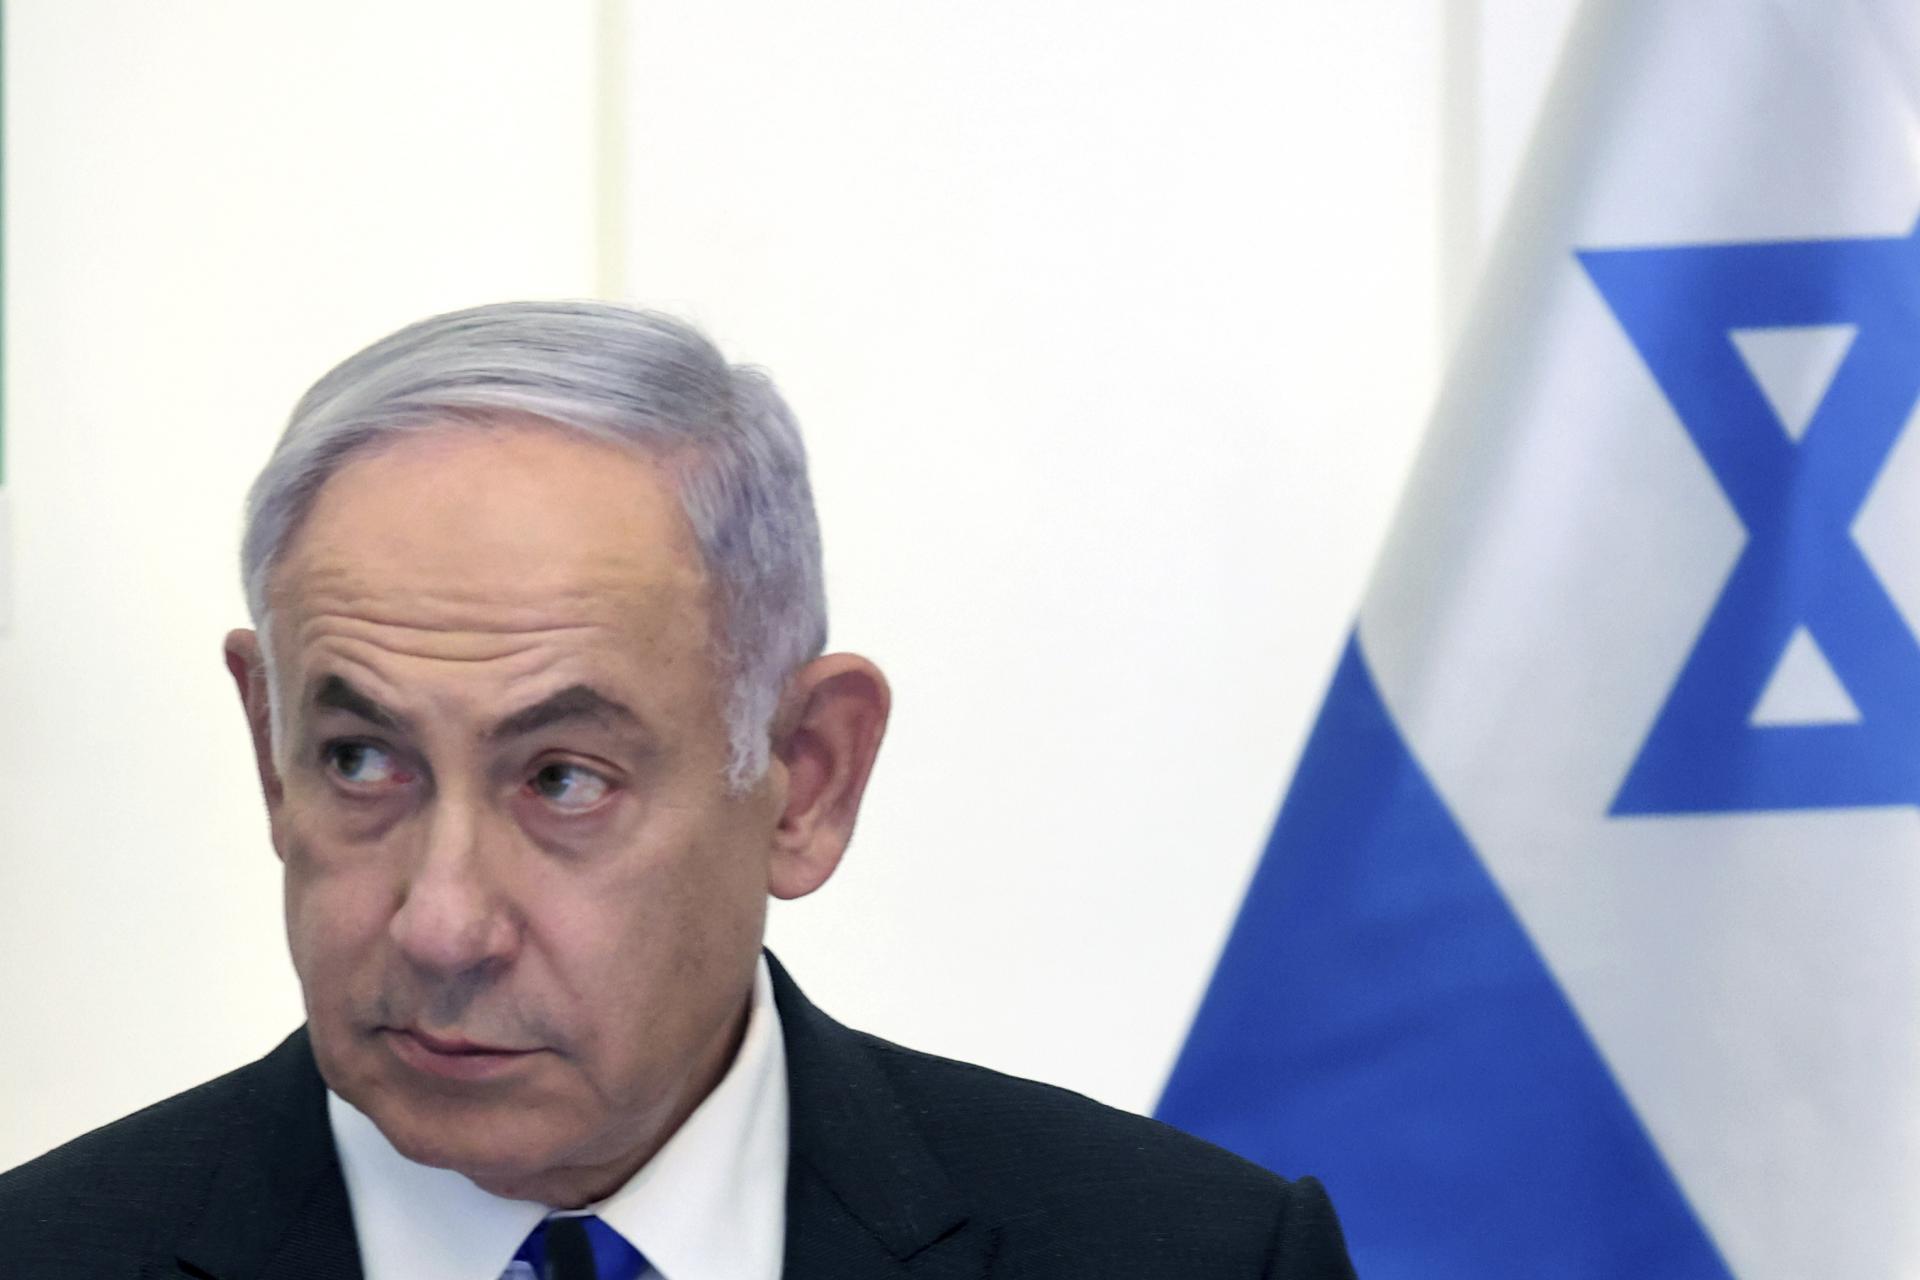 Izrael je takmer hotový s elimináciou vojenských schopností Hamasu, tvrdí Netanjahu